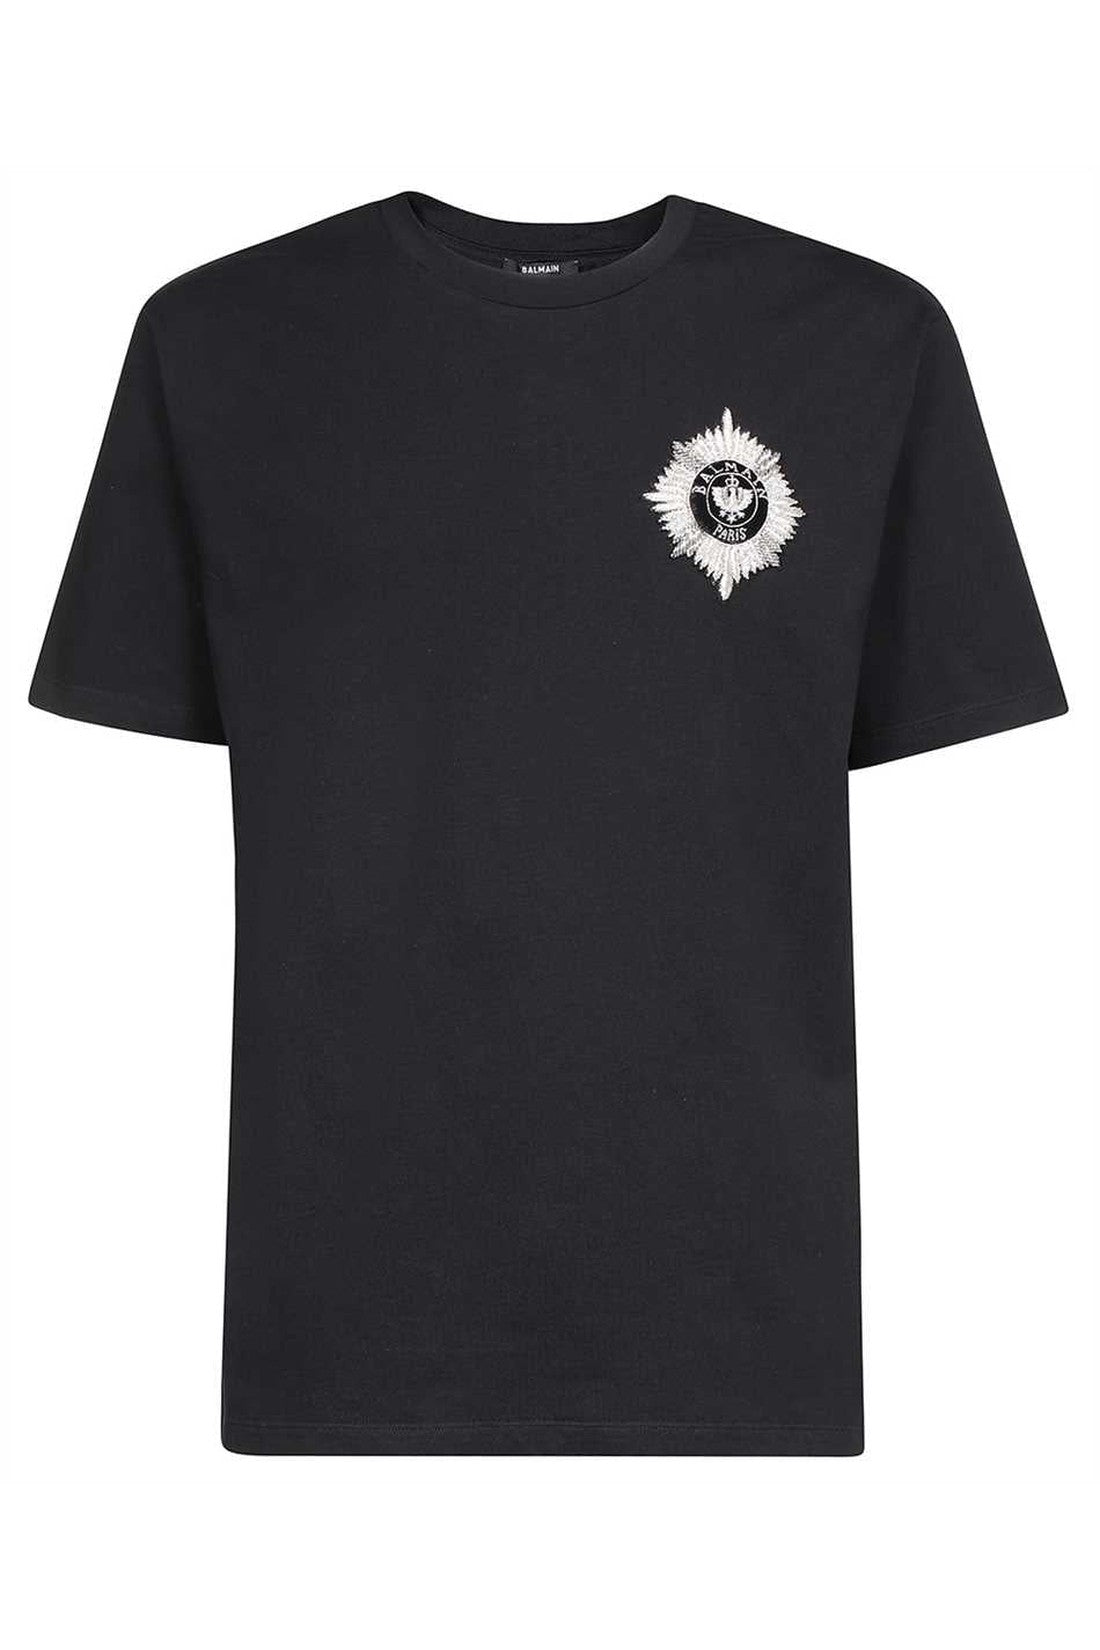 Balmain-OUTLET-SALE-Crew-neck-t-shirt-Shirts-L-ARCHIVE-COLLECTION_489590ca-ecd4-4f40-980b-d5d881c6bafe.jpg